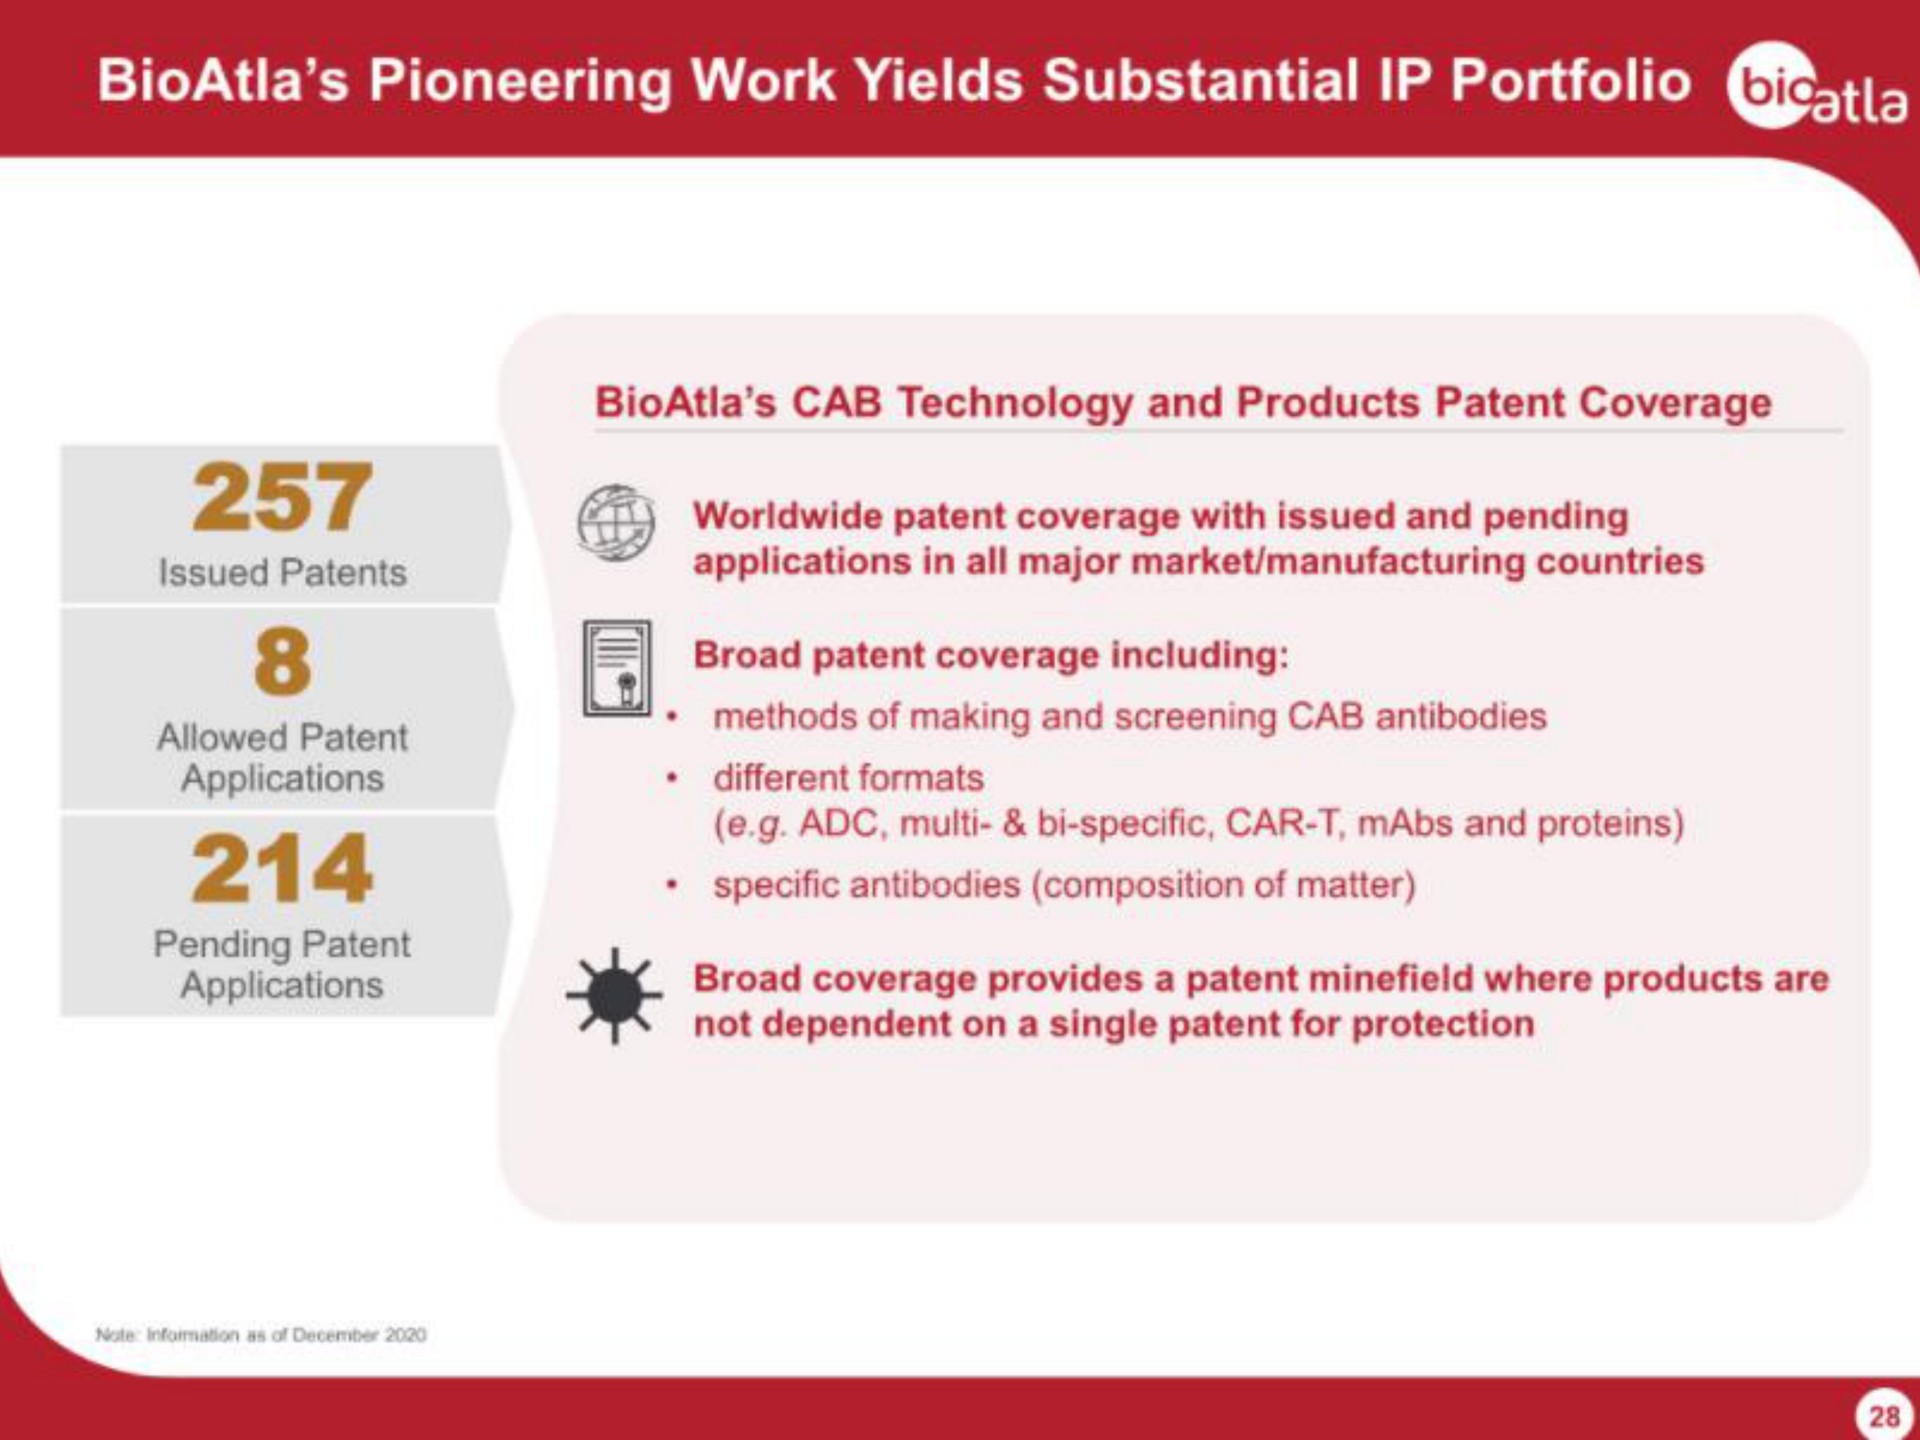 pioneering work yields substantial portfolio | BioAtla